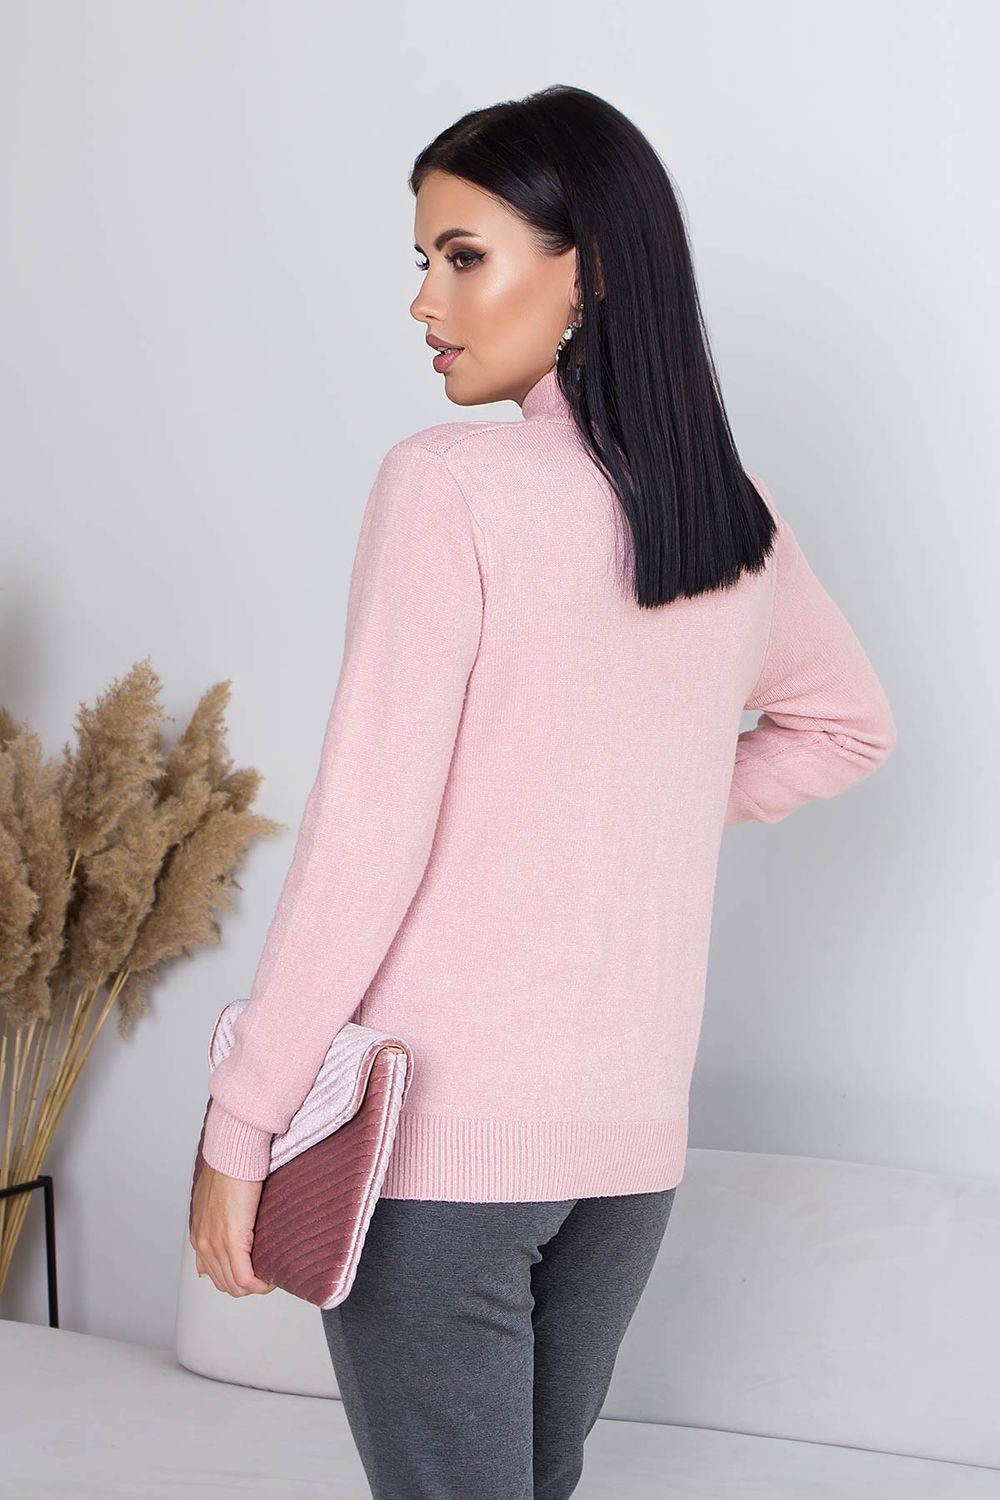 Жіночий в'язаний светр з візерунком коси пудровий кольору - фото